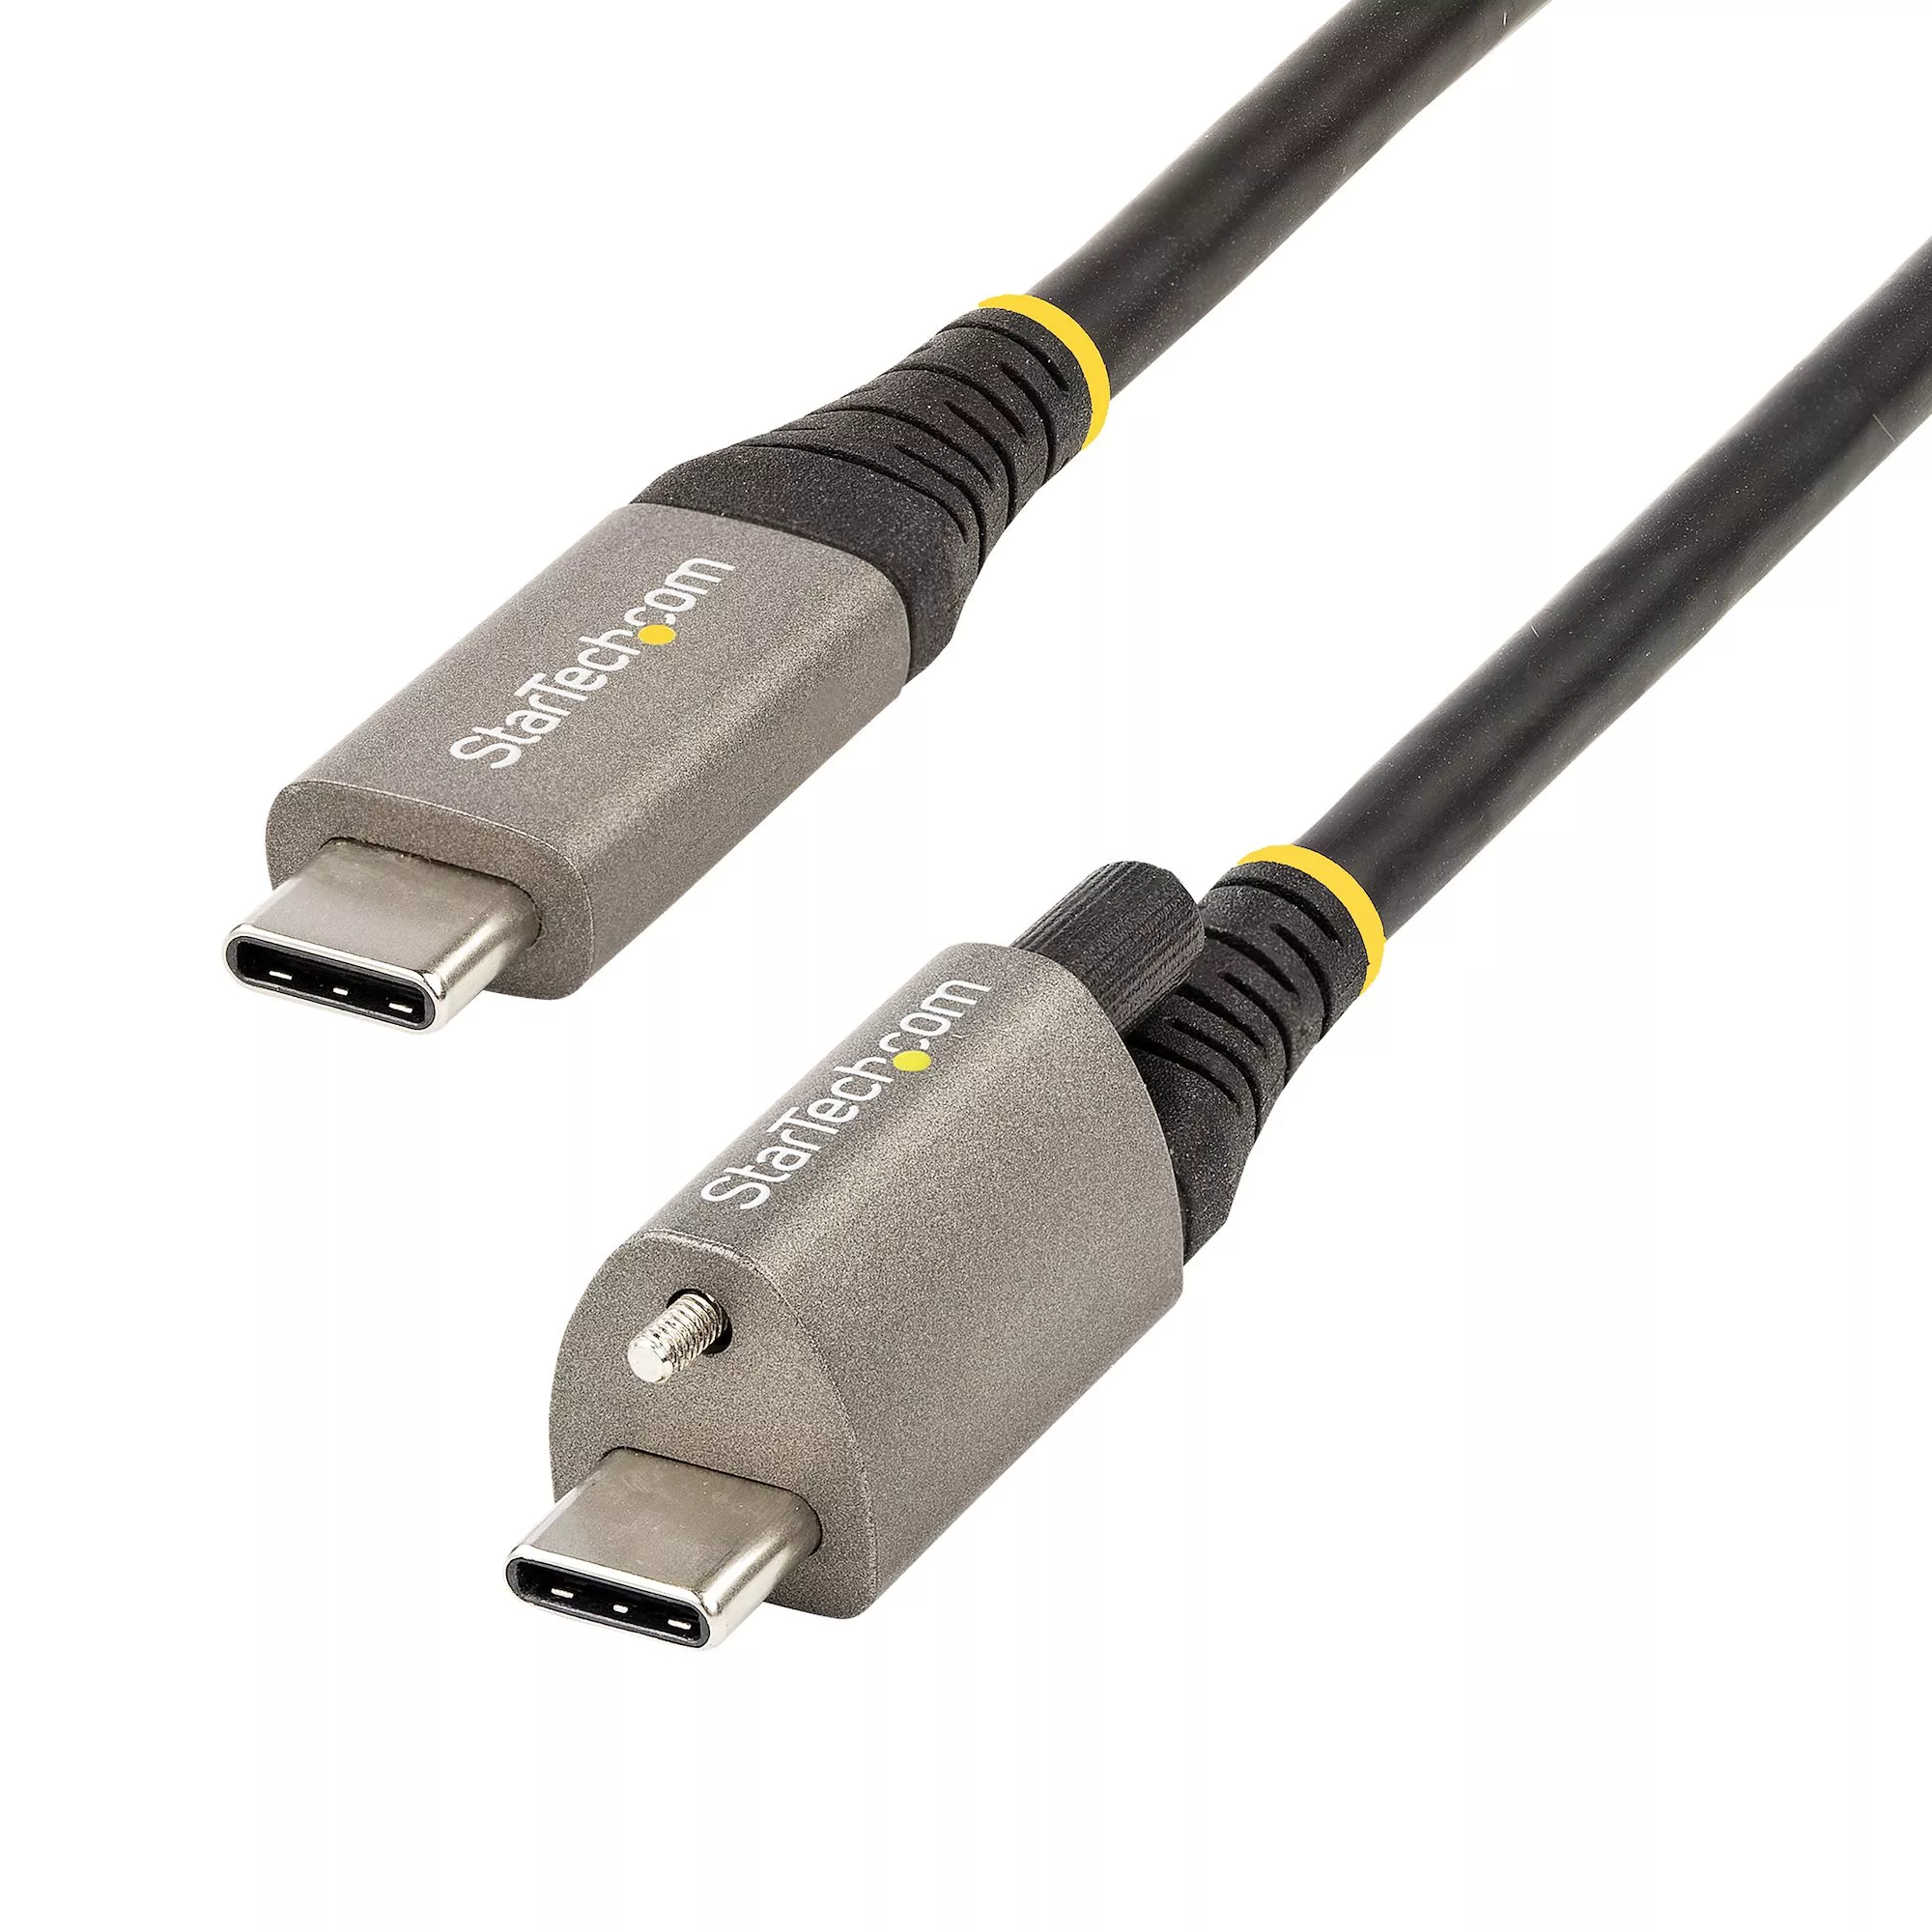 Achat StarTech.com Câble USB C 10Gbps 1m à Verouillage par Vis au meilleur prix